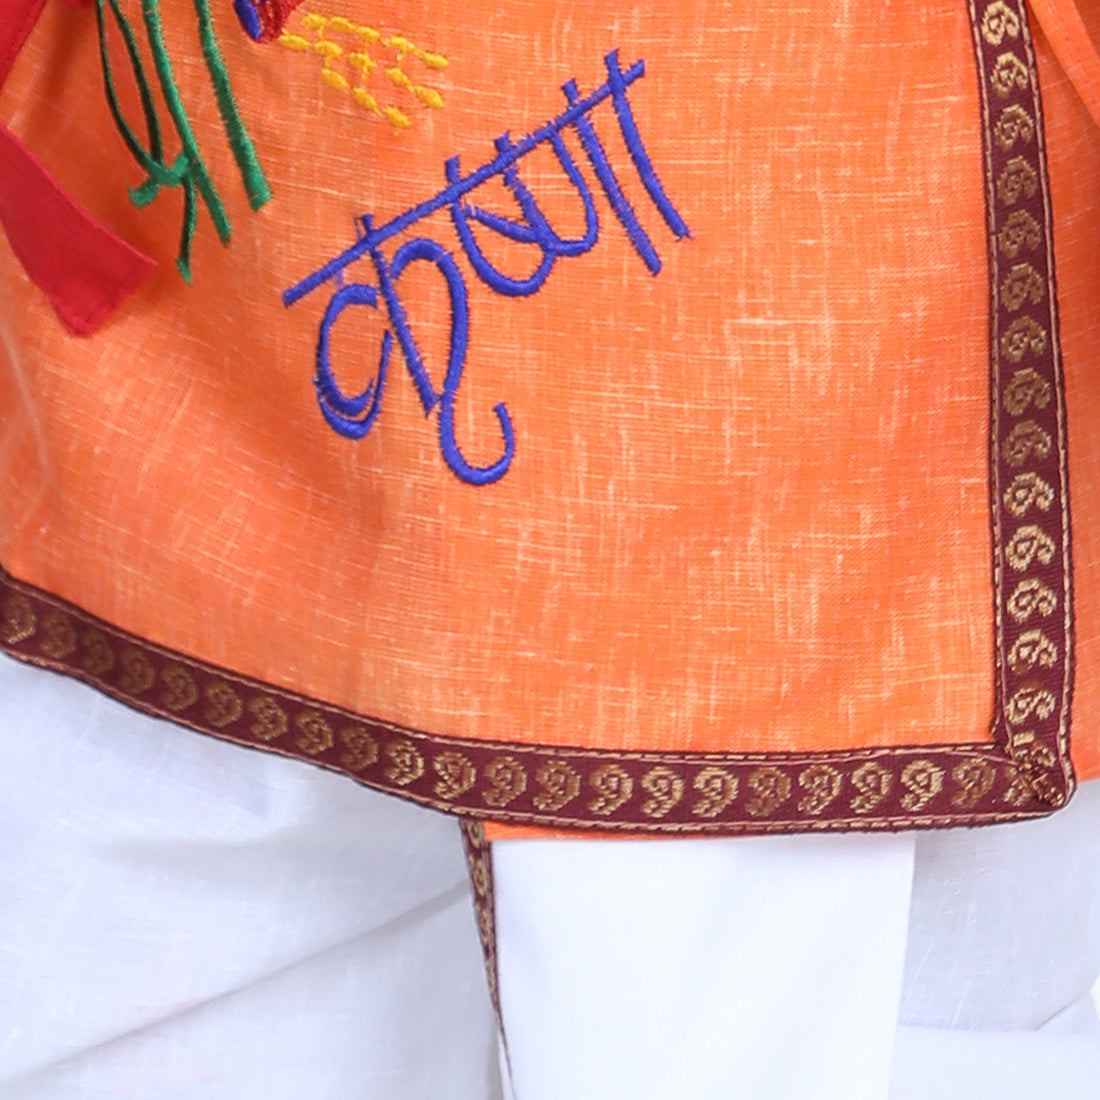 BownBee Full Sleeves Krishna Embroidered Kurta With Dhoti & Mukut With Basuri & Band - Orange